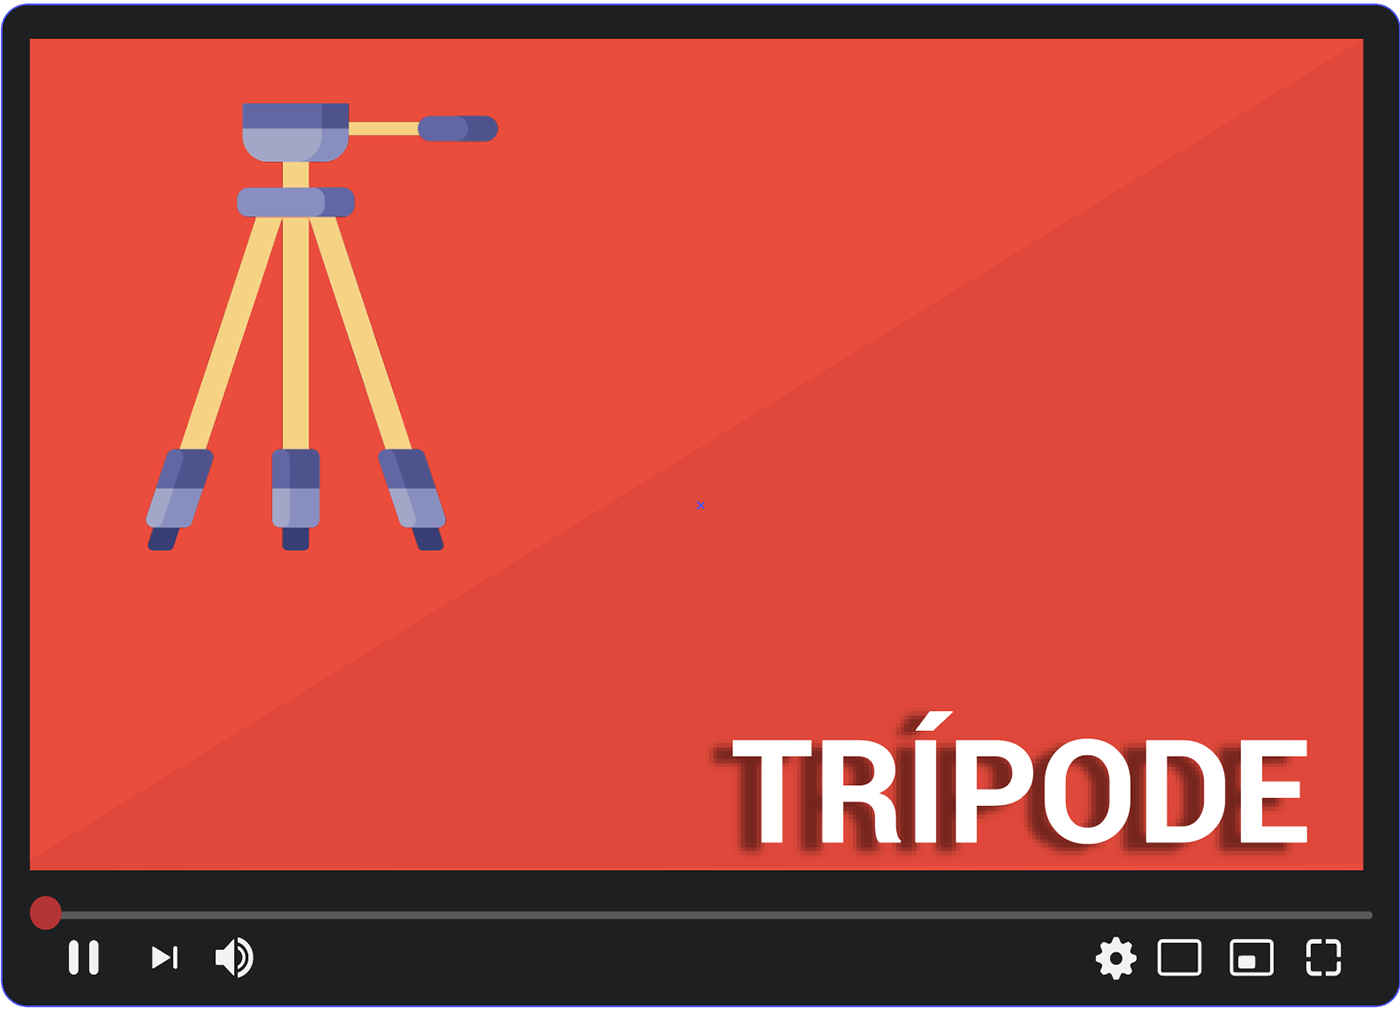 Dale estabilidad a tus videos con un trípode.